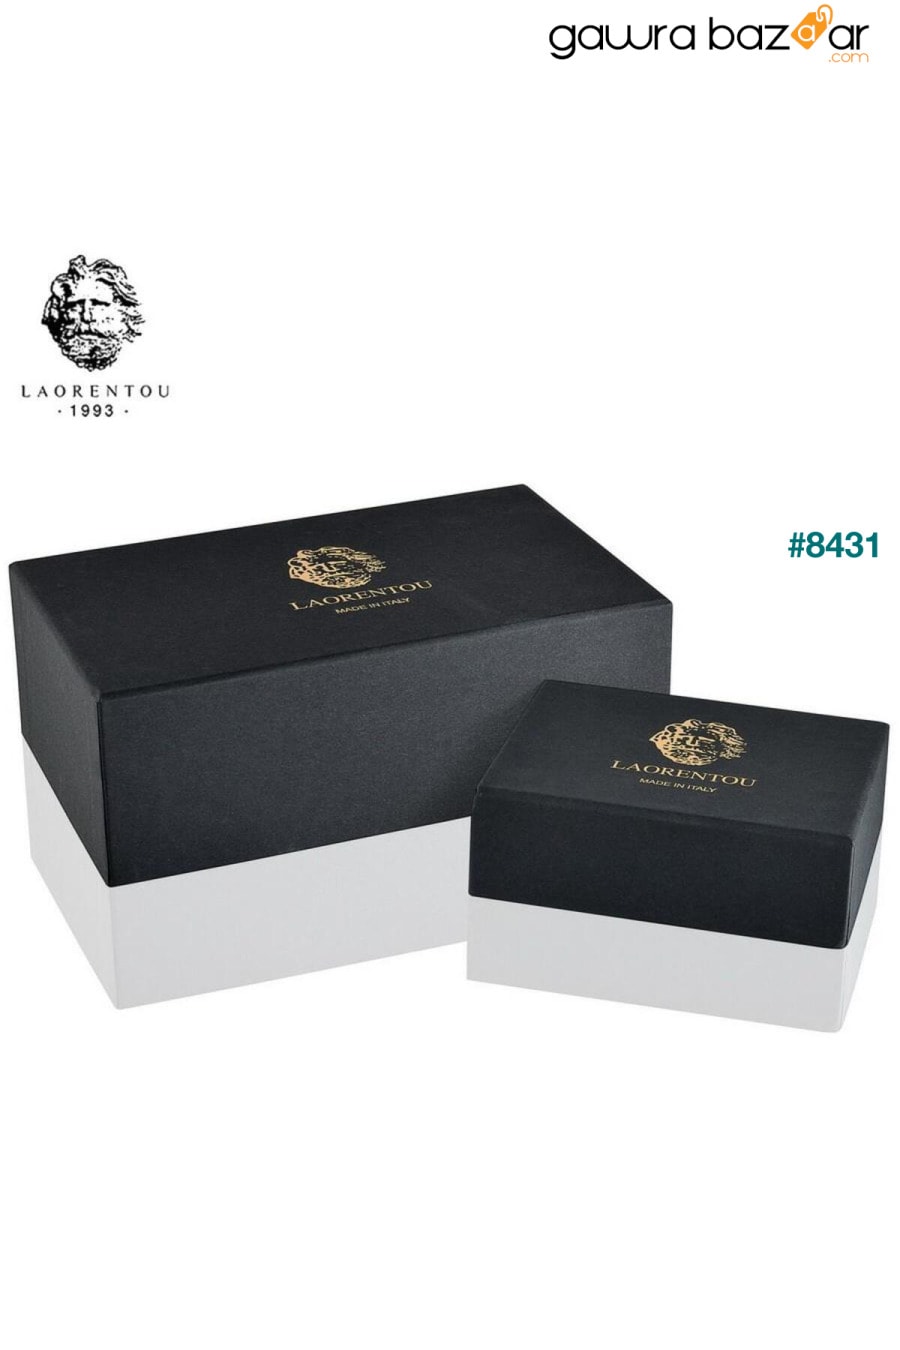 محفظة رجالية من الجلد الطبيعي صناعة إيطالية من جيوفاني بوس كونسبت - حامل بطاقات للرجال Laorentou 5